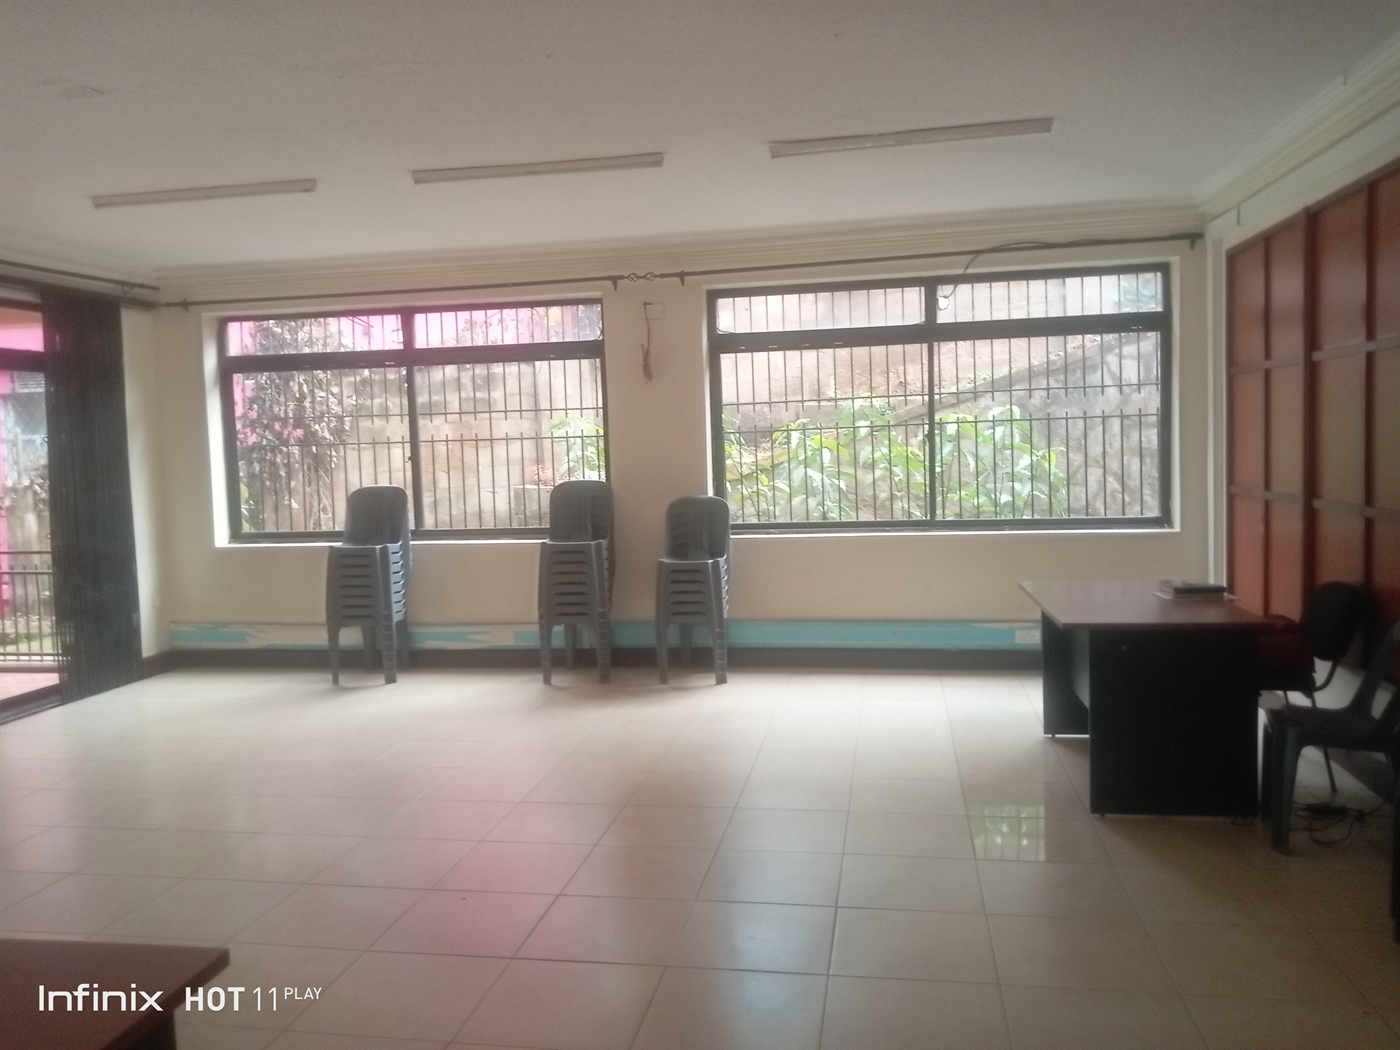 Duplex for rent in Kololo Kampala